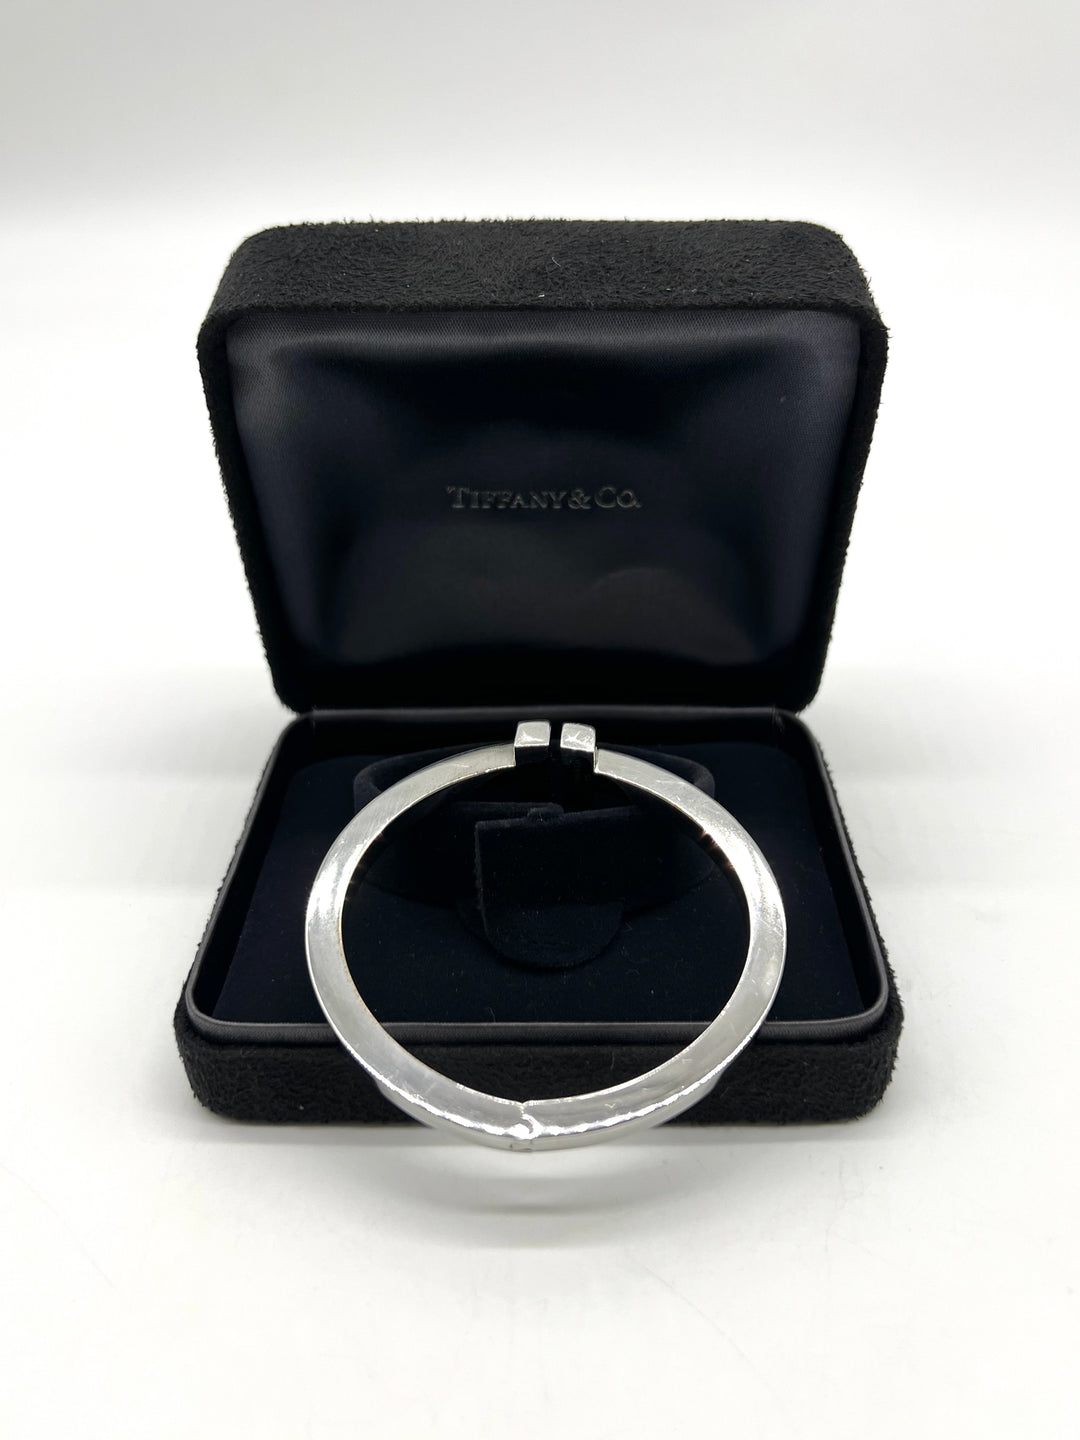 Tiffany T bracelet - Square Bracelet in Sterling silver